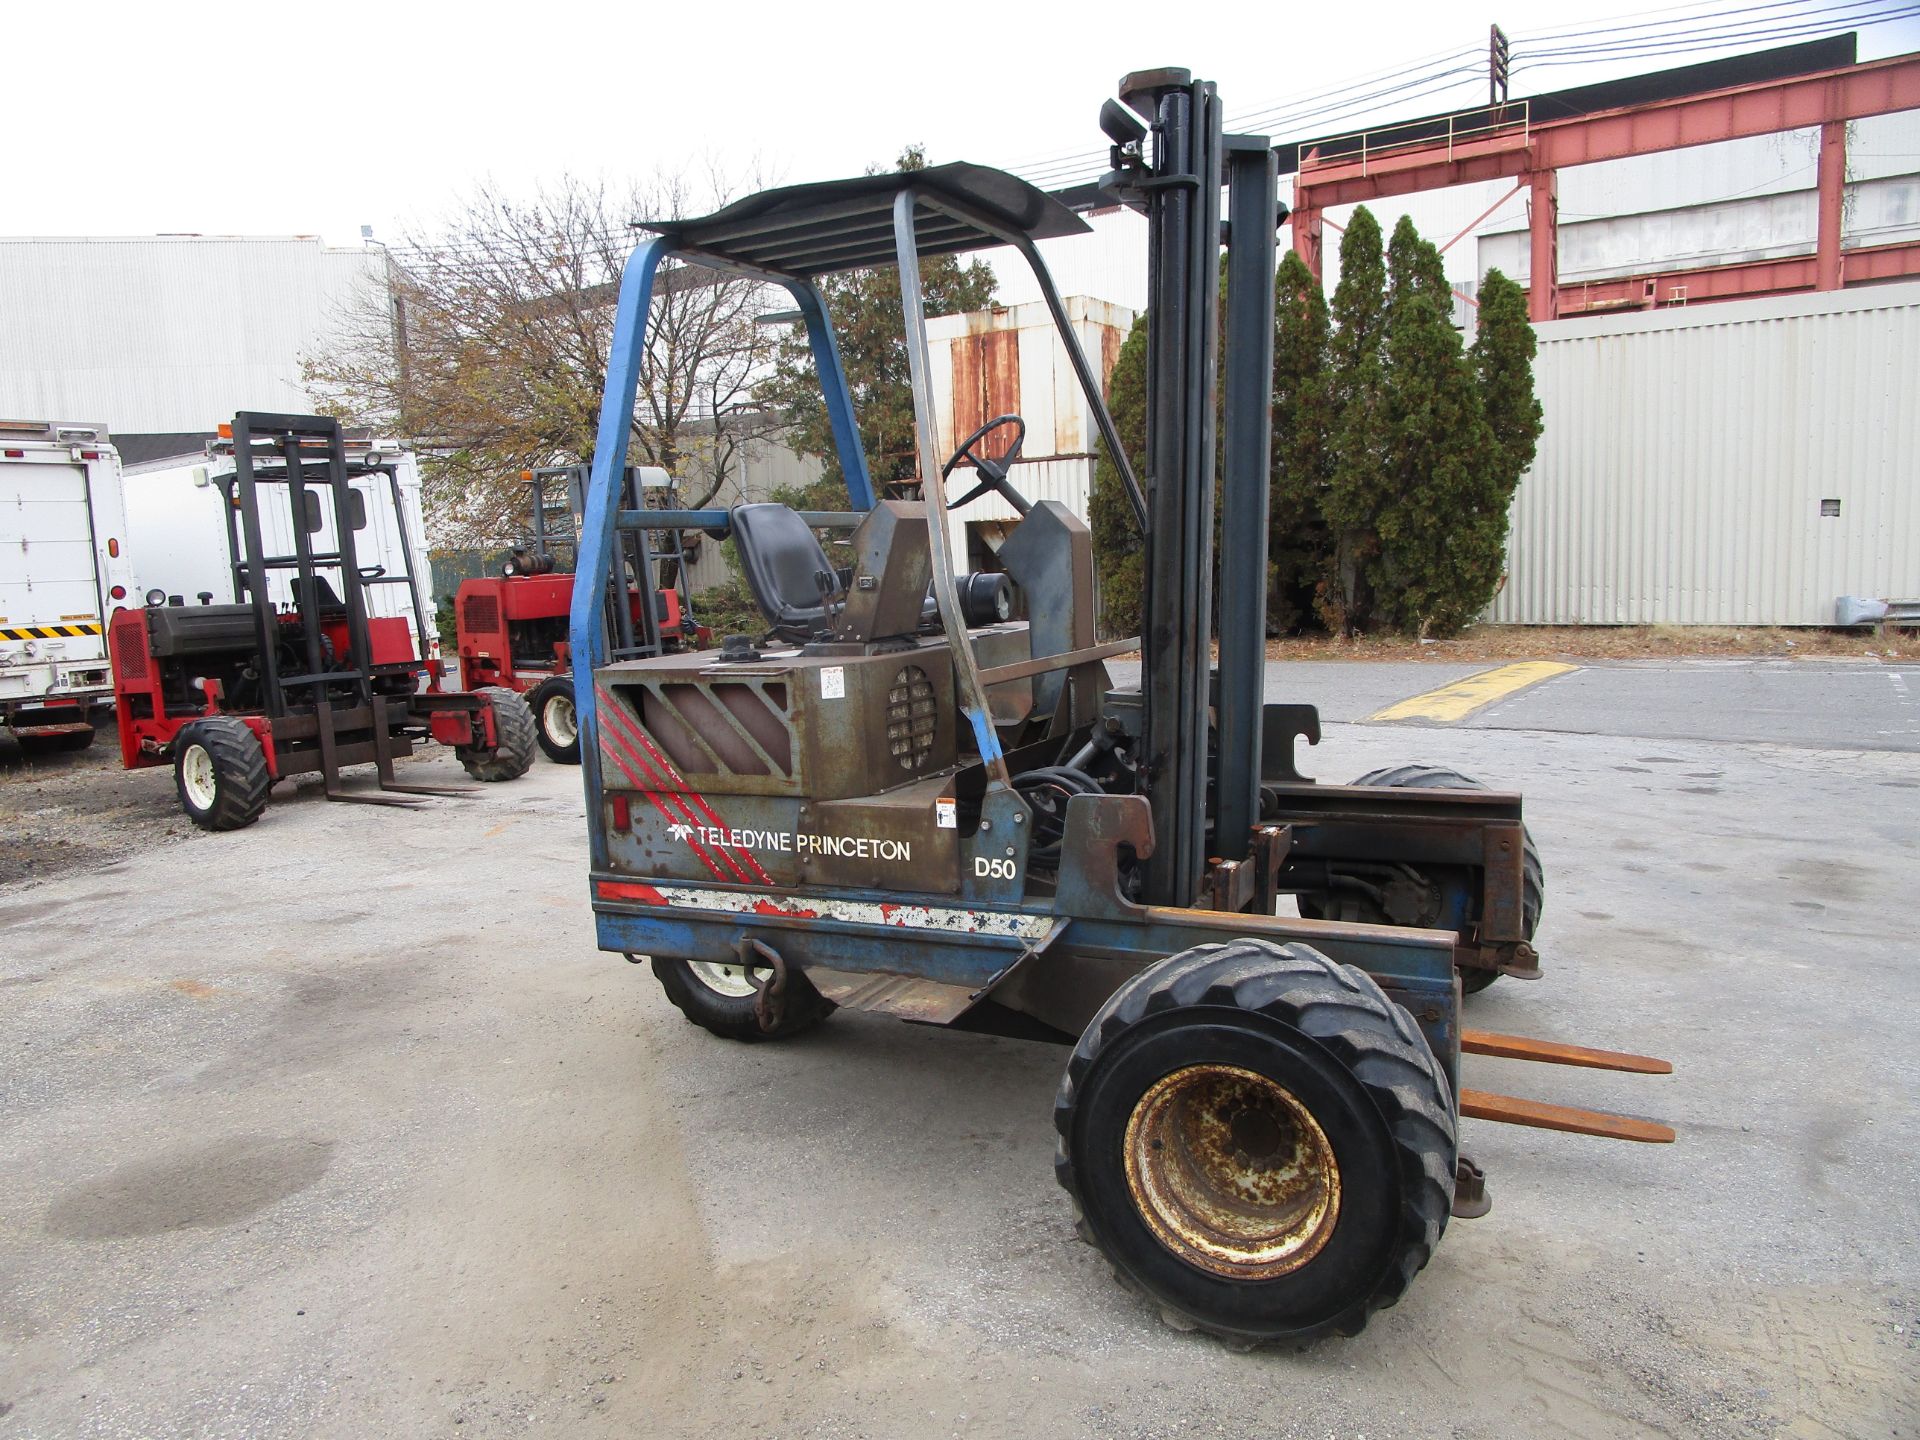 Teledyne Princeton D50 Piggyback Forklift - Image 7 of 13